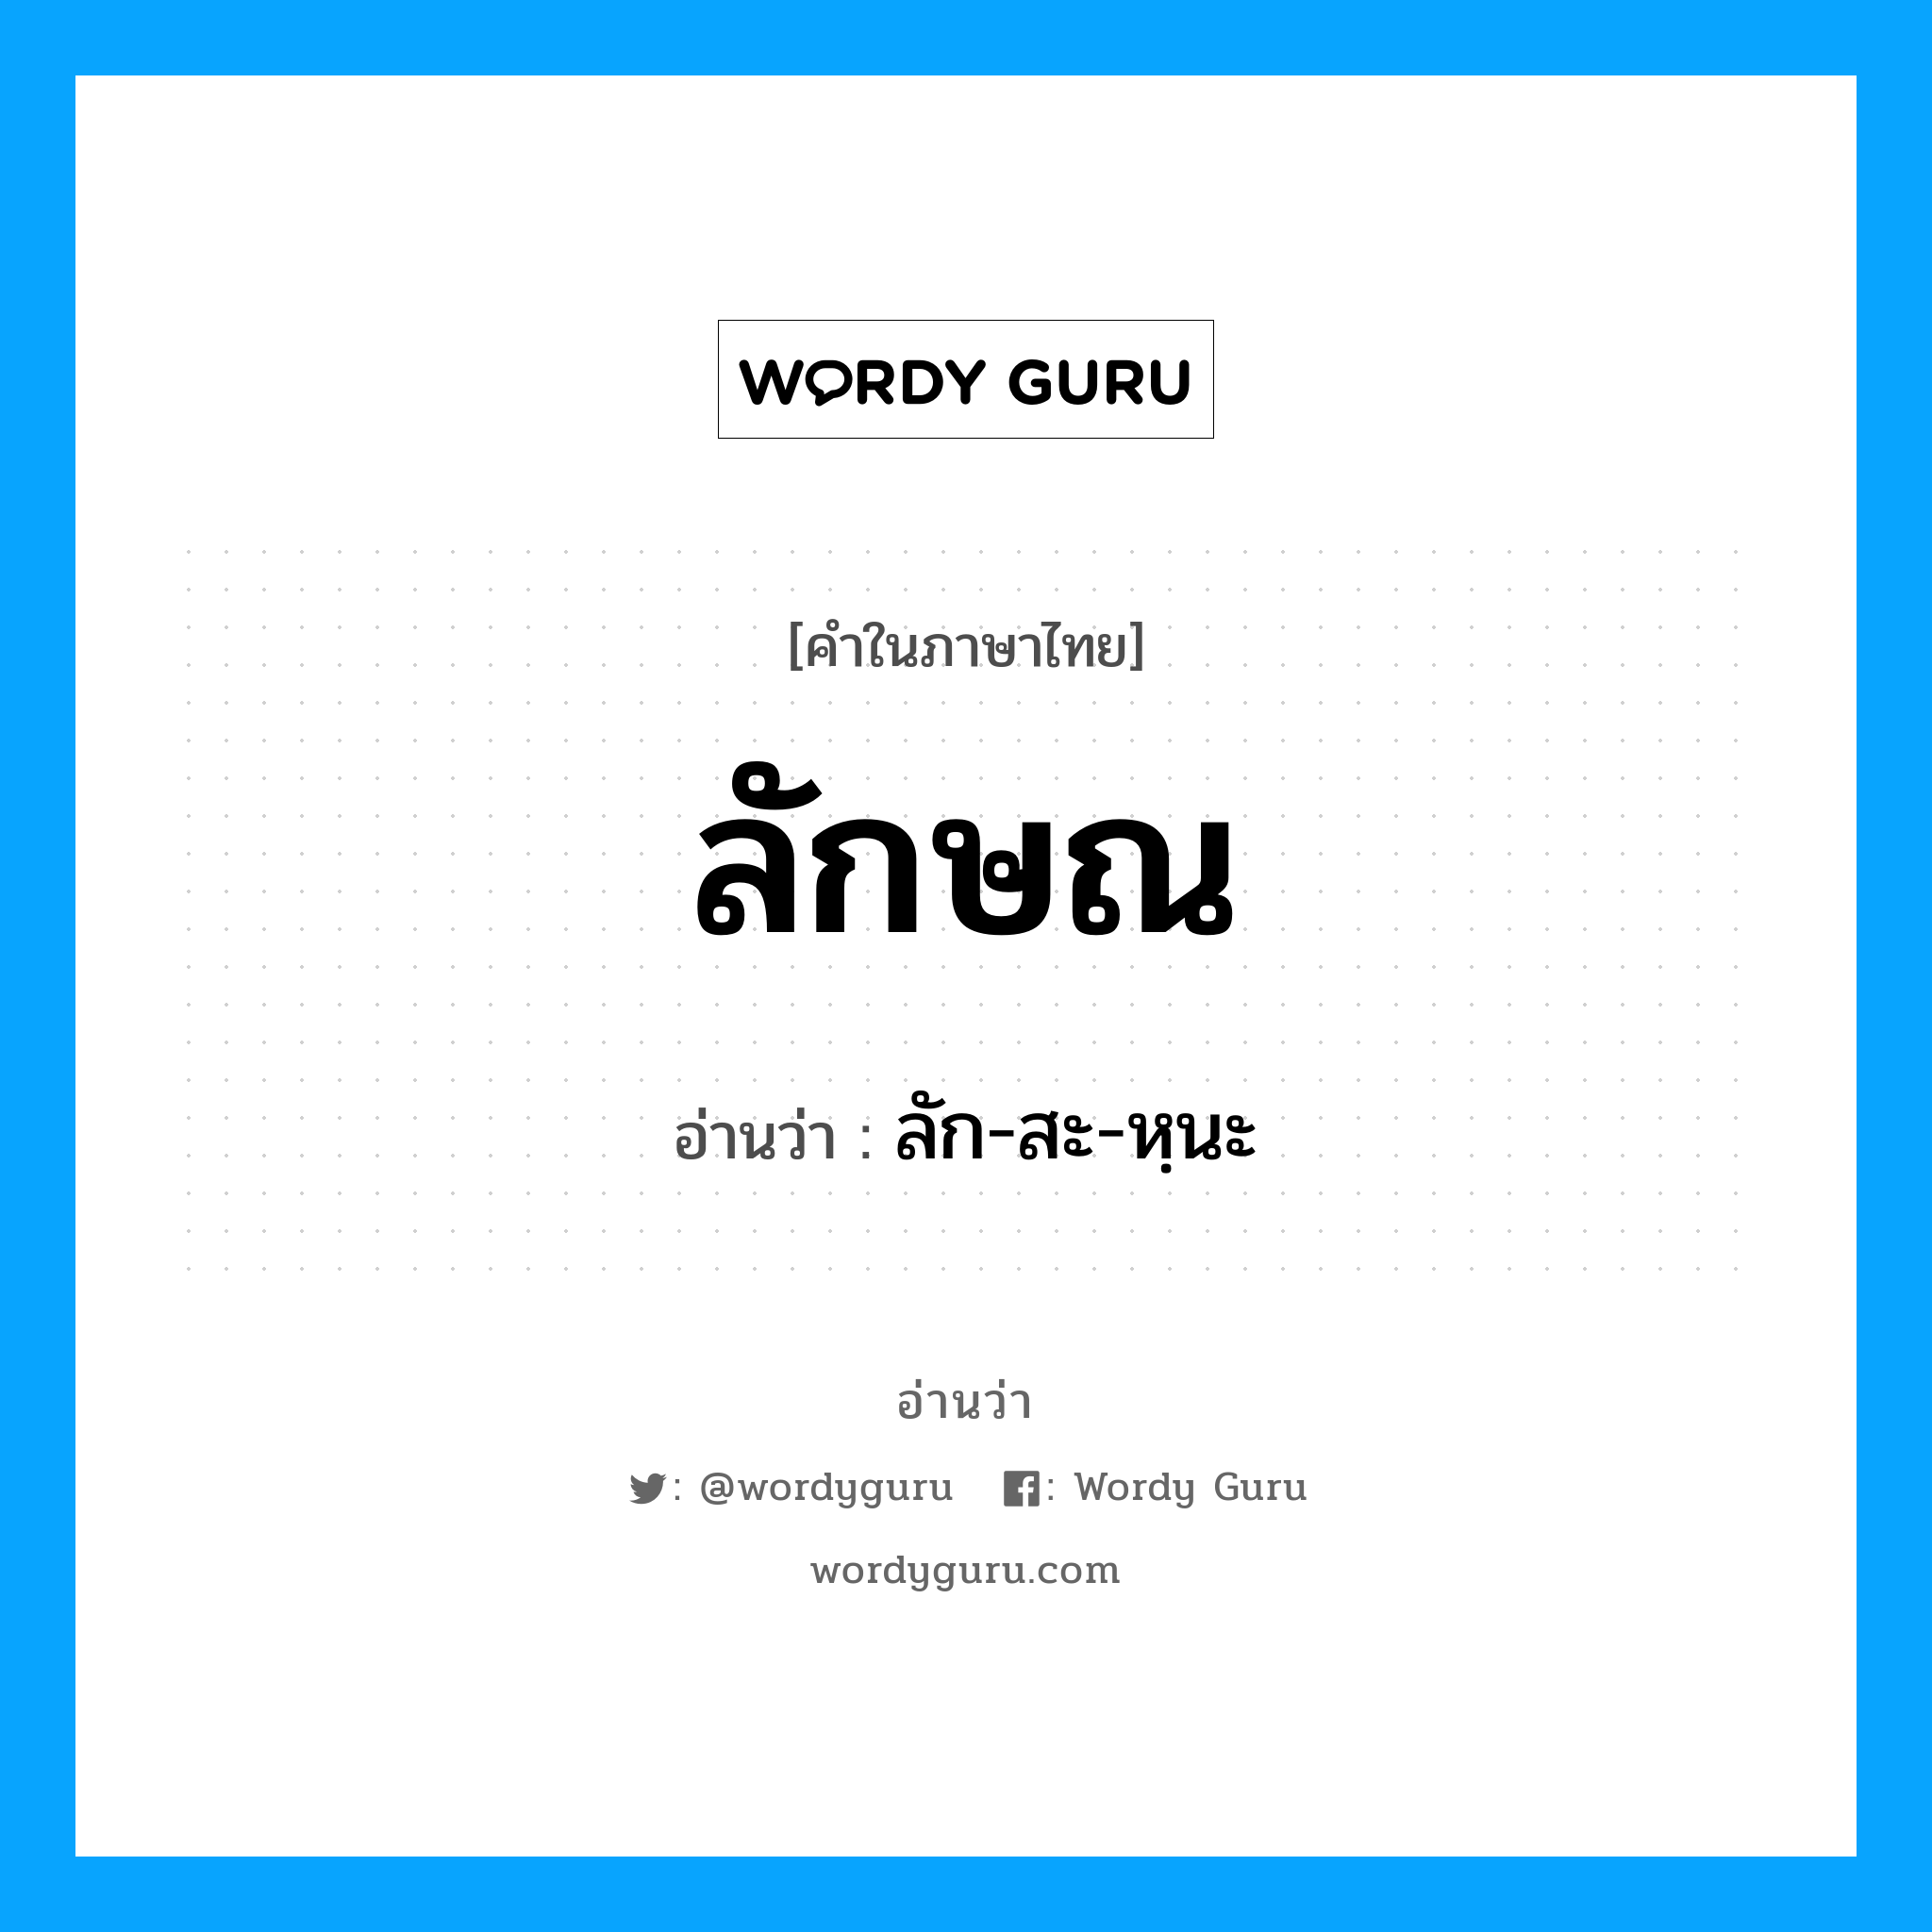 ลัก-สะ-หฺนะ เป็นคำอ่านของคำไหน?, คำในภาษาไทย ลัก-สะ-หฺนะ อ่านว่า ลักษณ